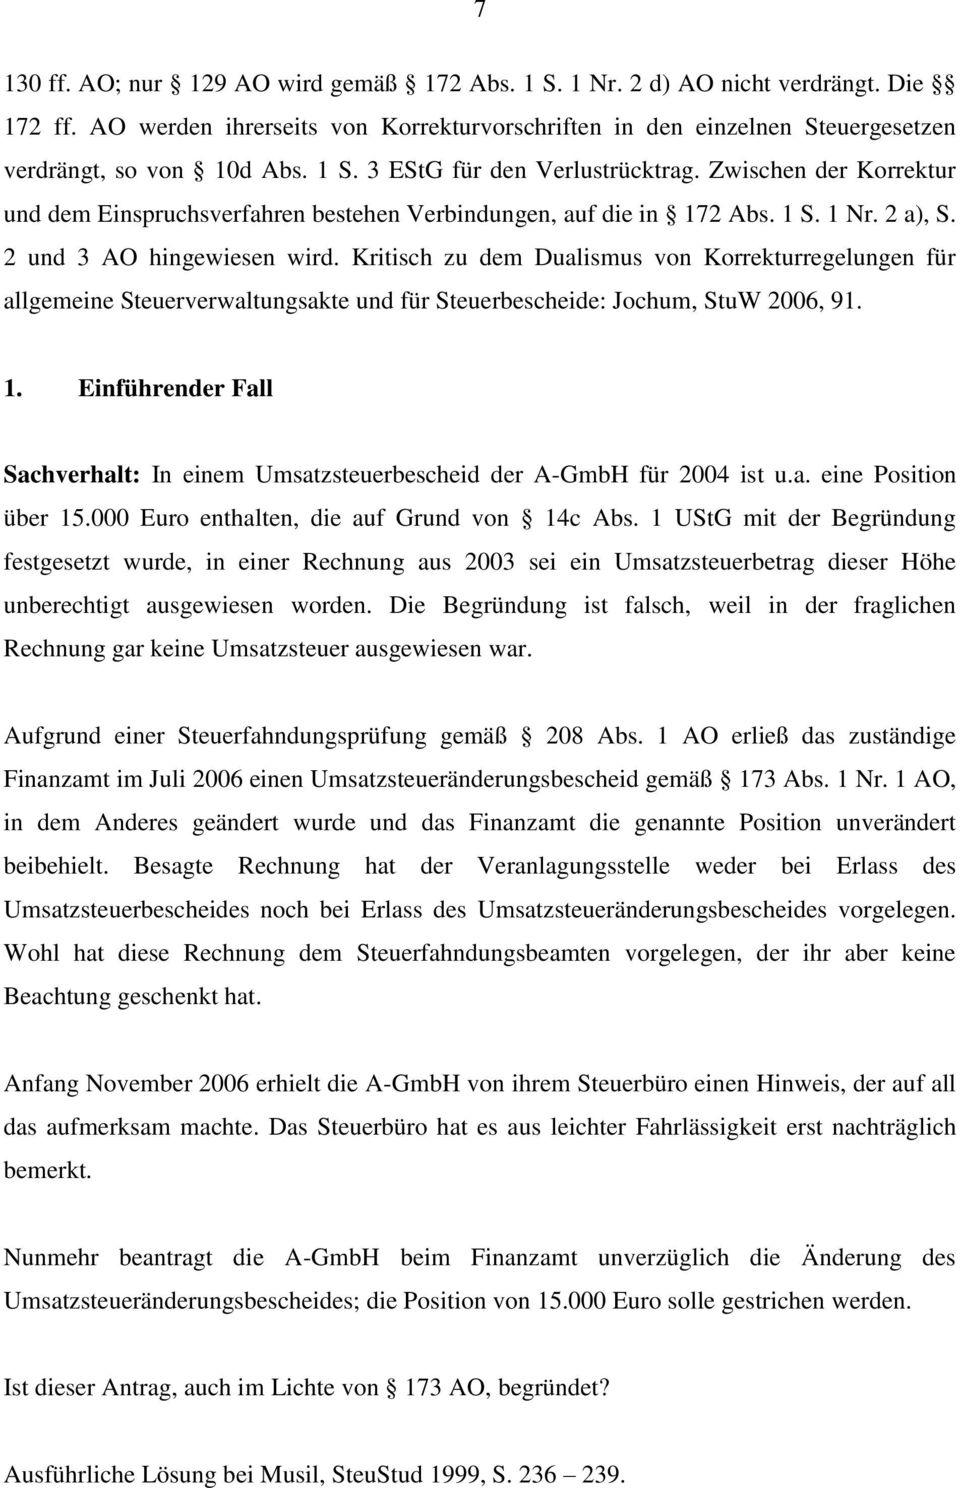 Kritisch zu dem Dualismus von Korrekturregelungen für allgemeine Steuerverwaltungsakte und für Steuerbescheide: Jochum, StuW 2006, 91. 1.